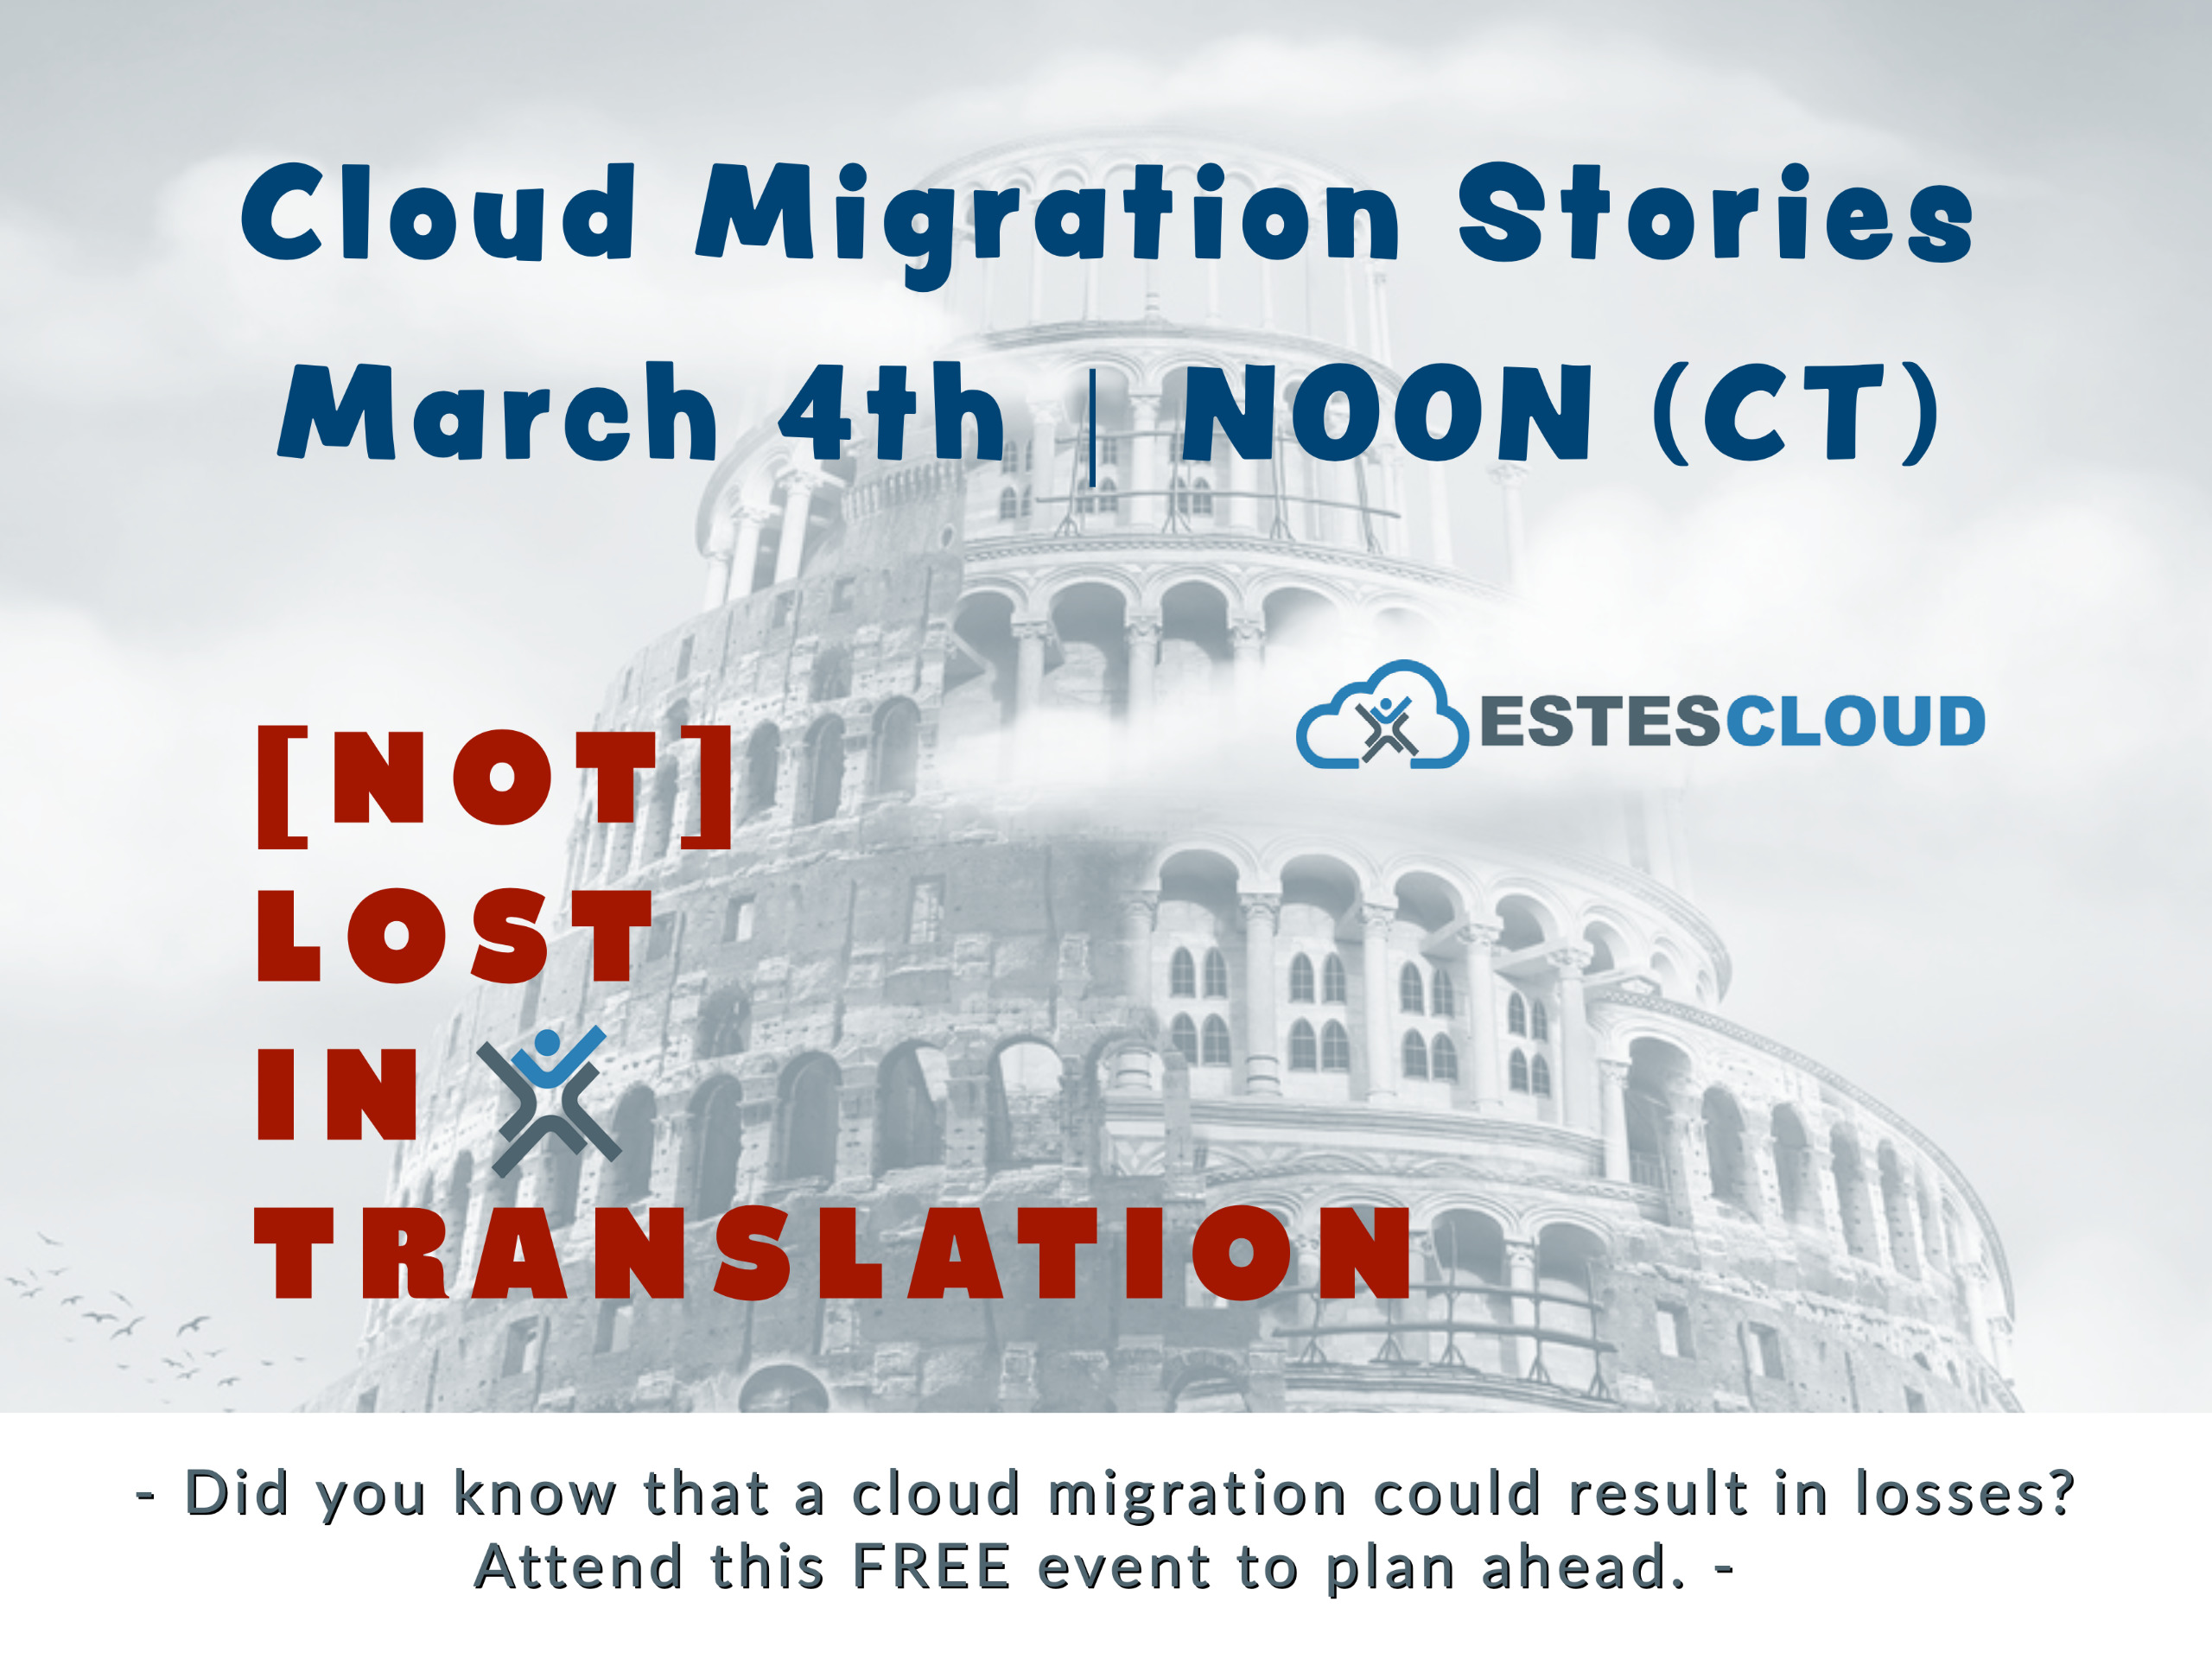 Cloud Migration Stories EstesGroup Event